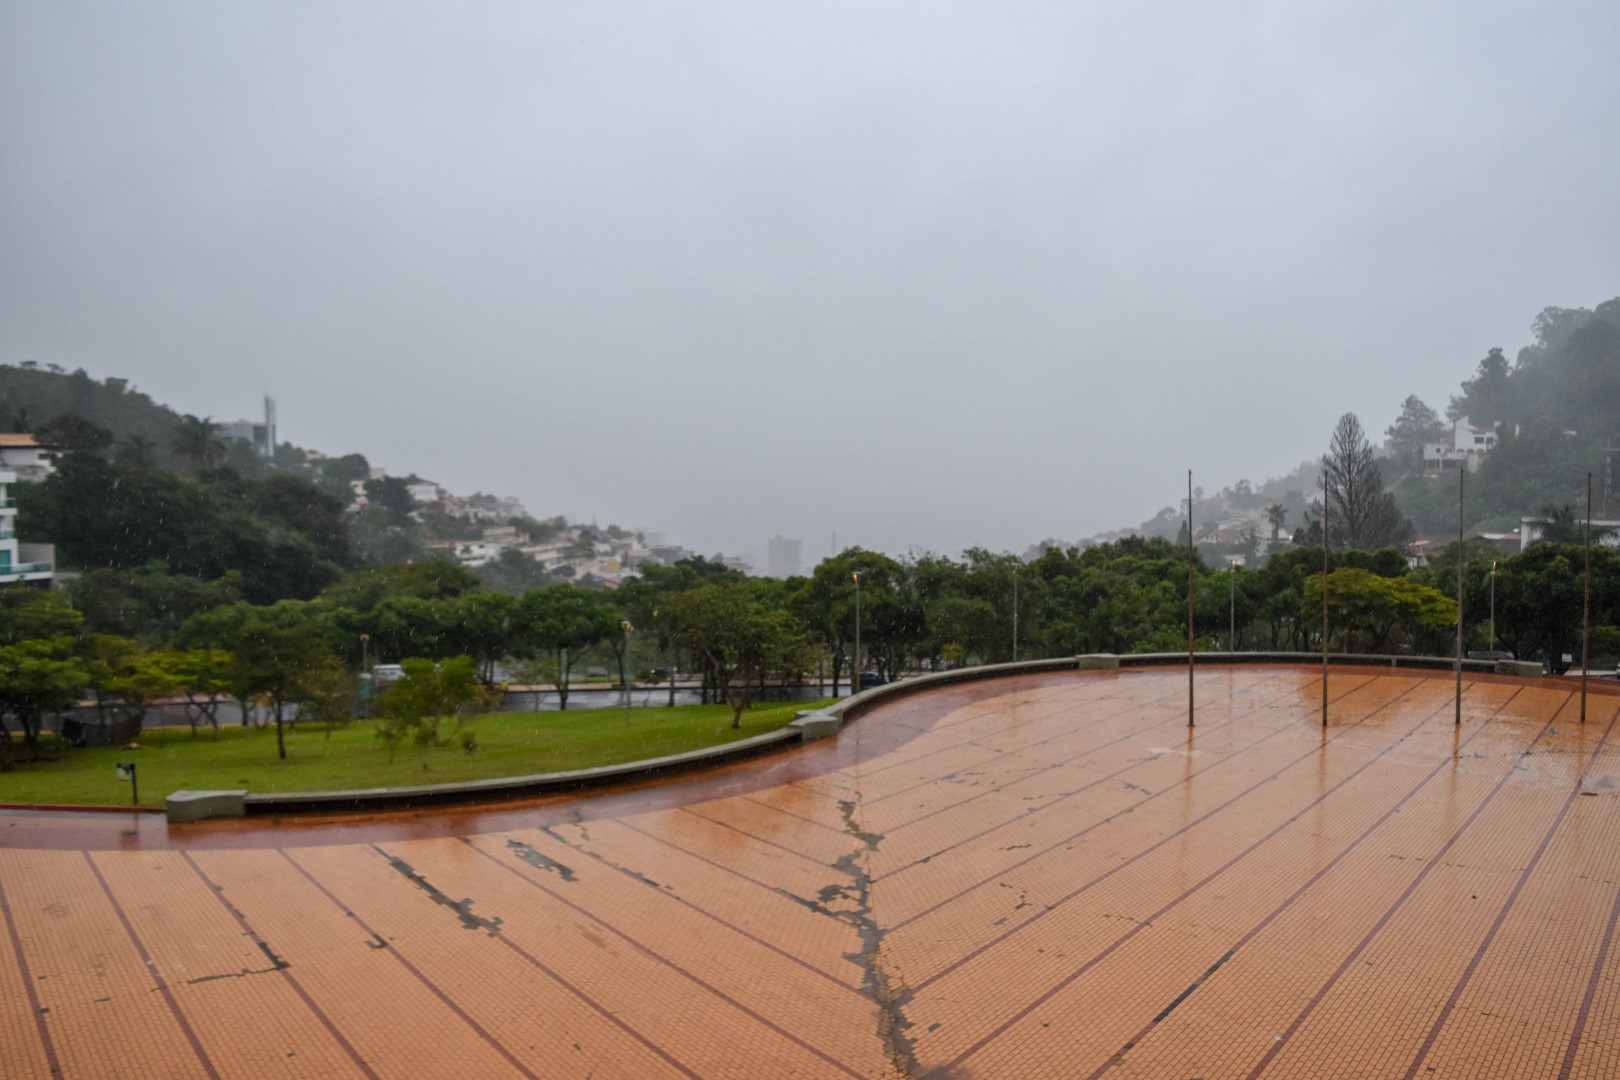 Praça Governador Israel Pinheiro (Praça do Papa),  Av. Agulhas Negras, s/n - Mangabeiras, Belo Horizonte - MG, 30210-060